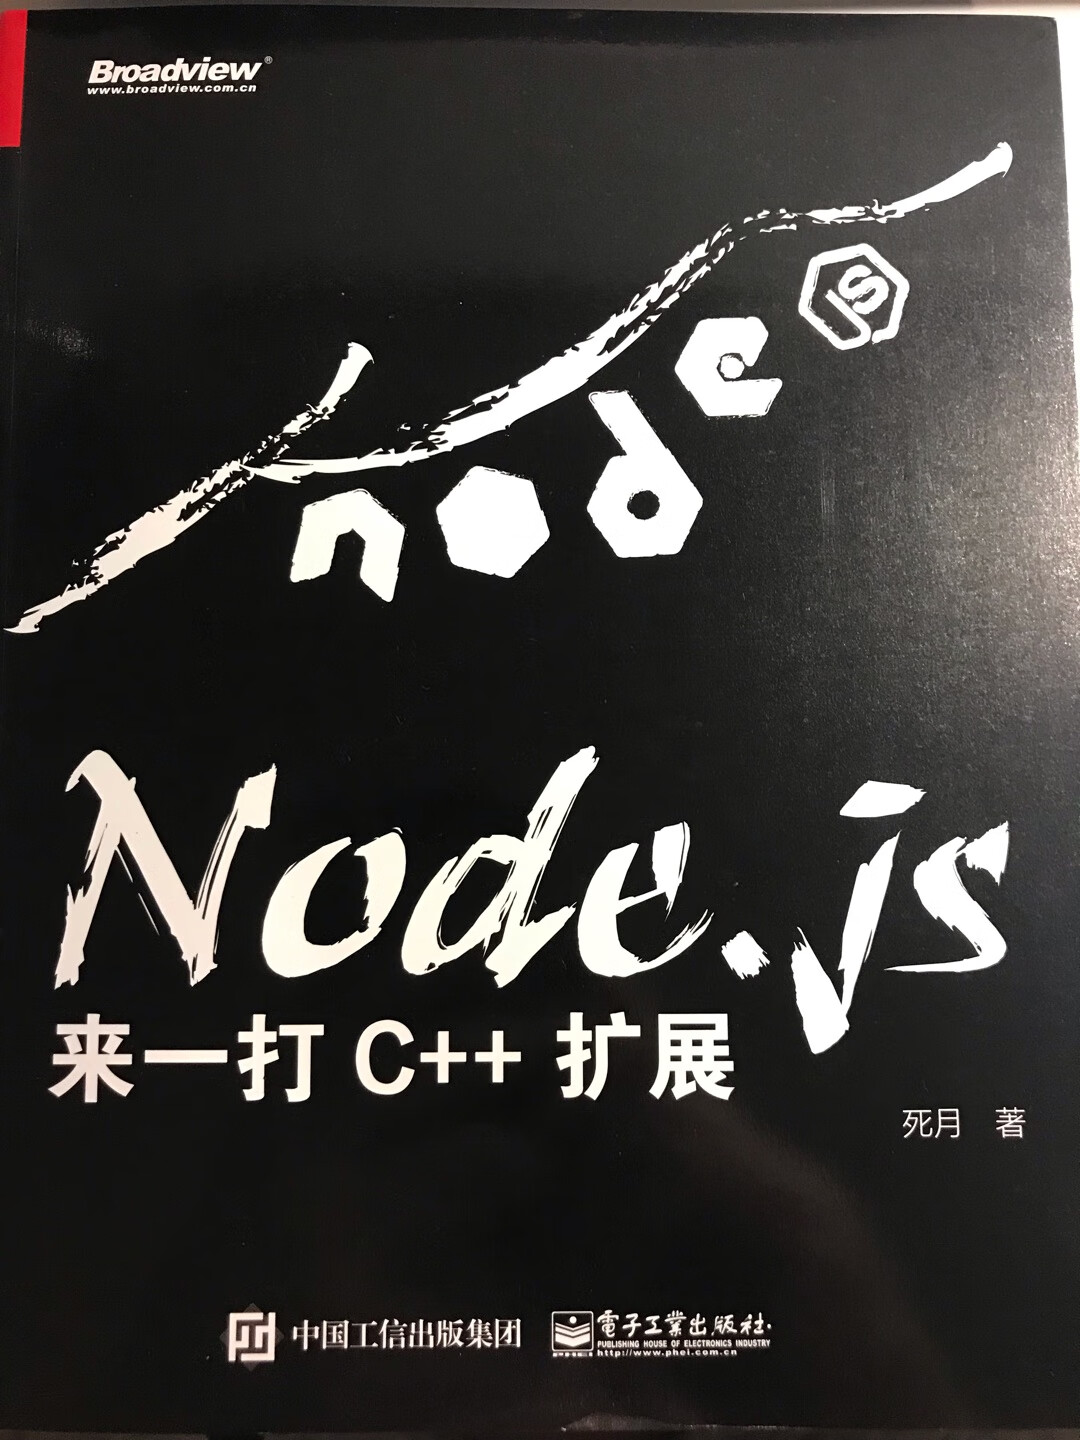 这是我见过最专业的node书了，学习完肯定大涨水平